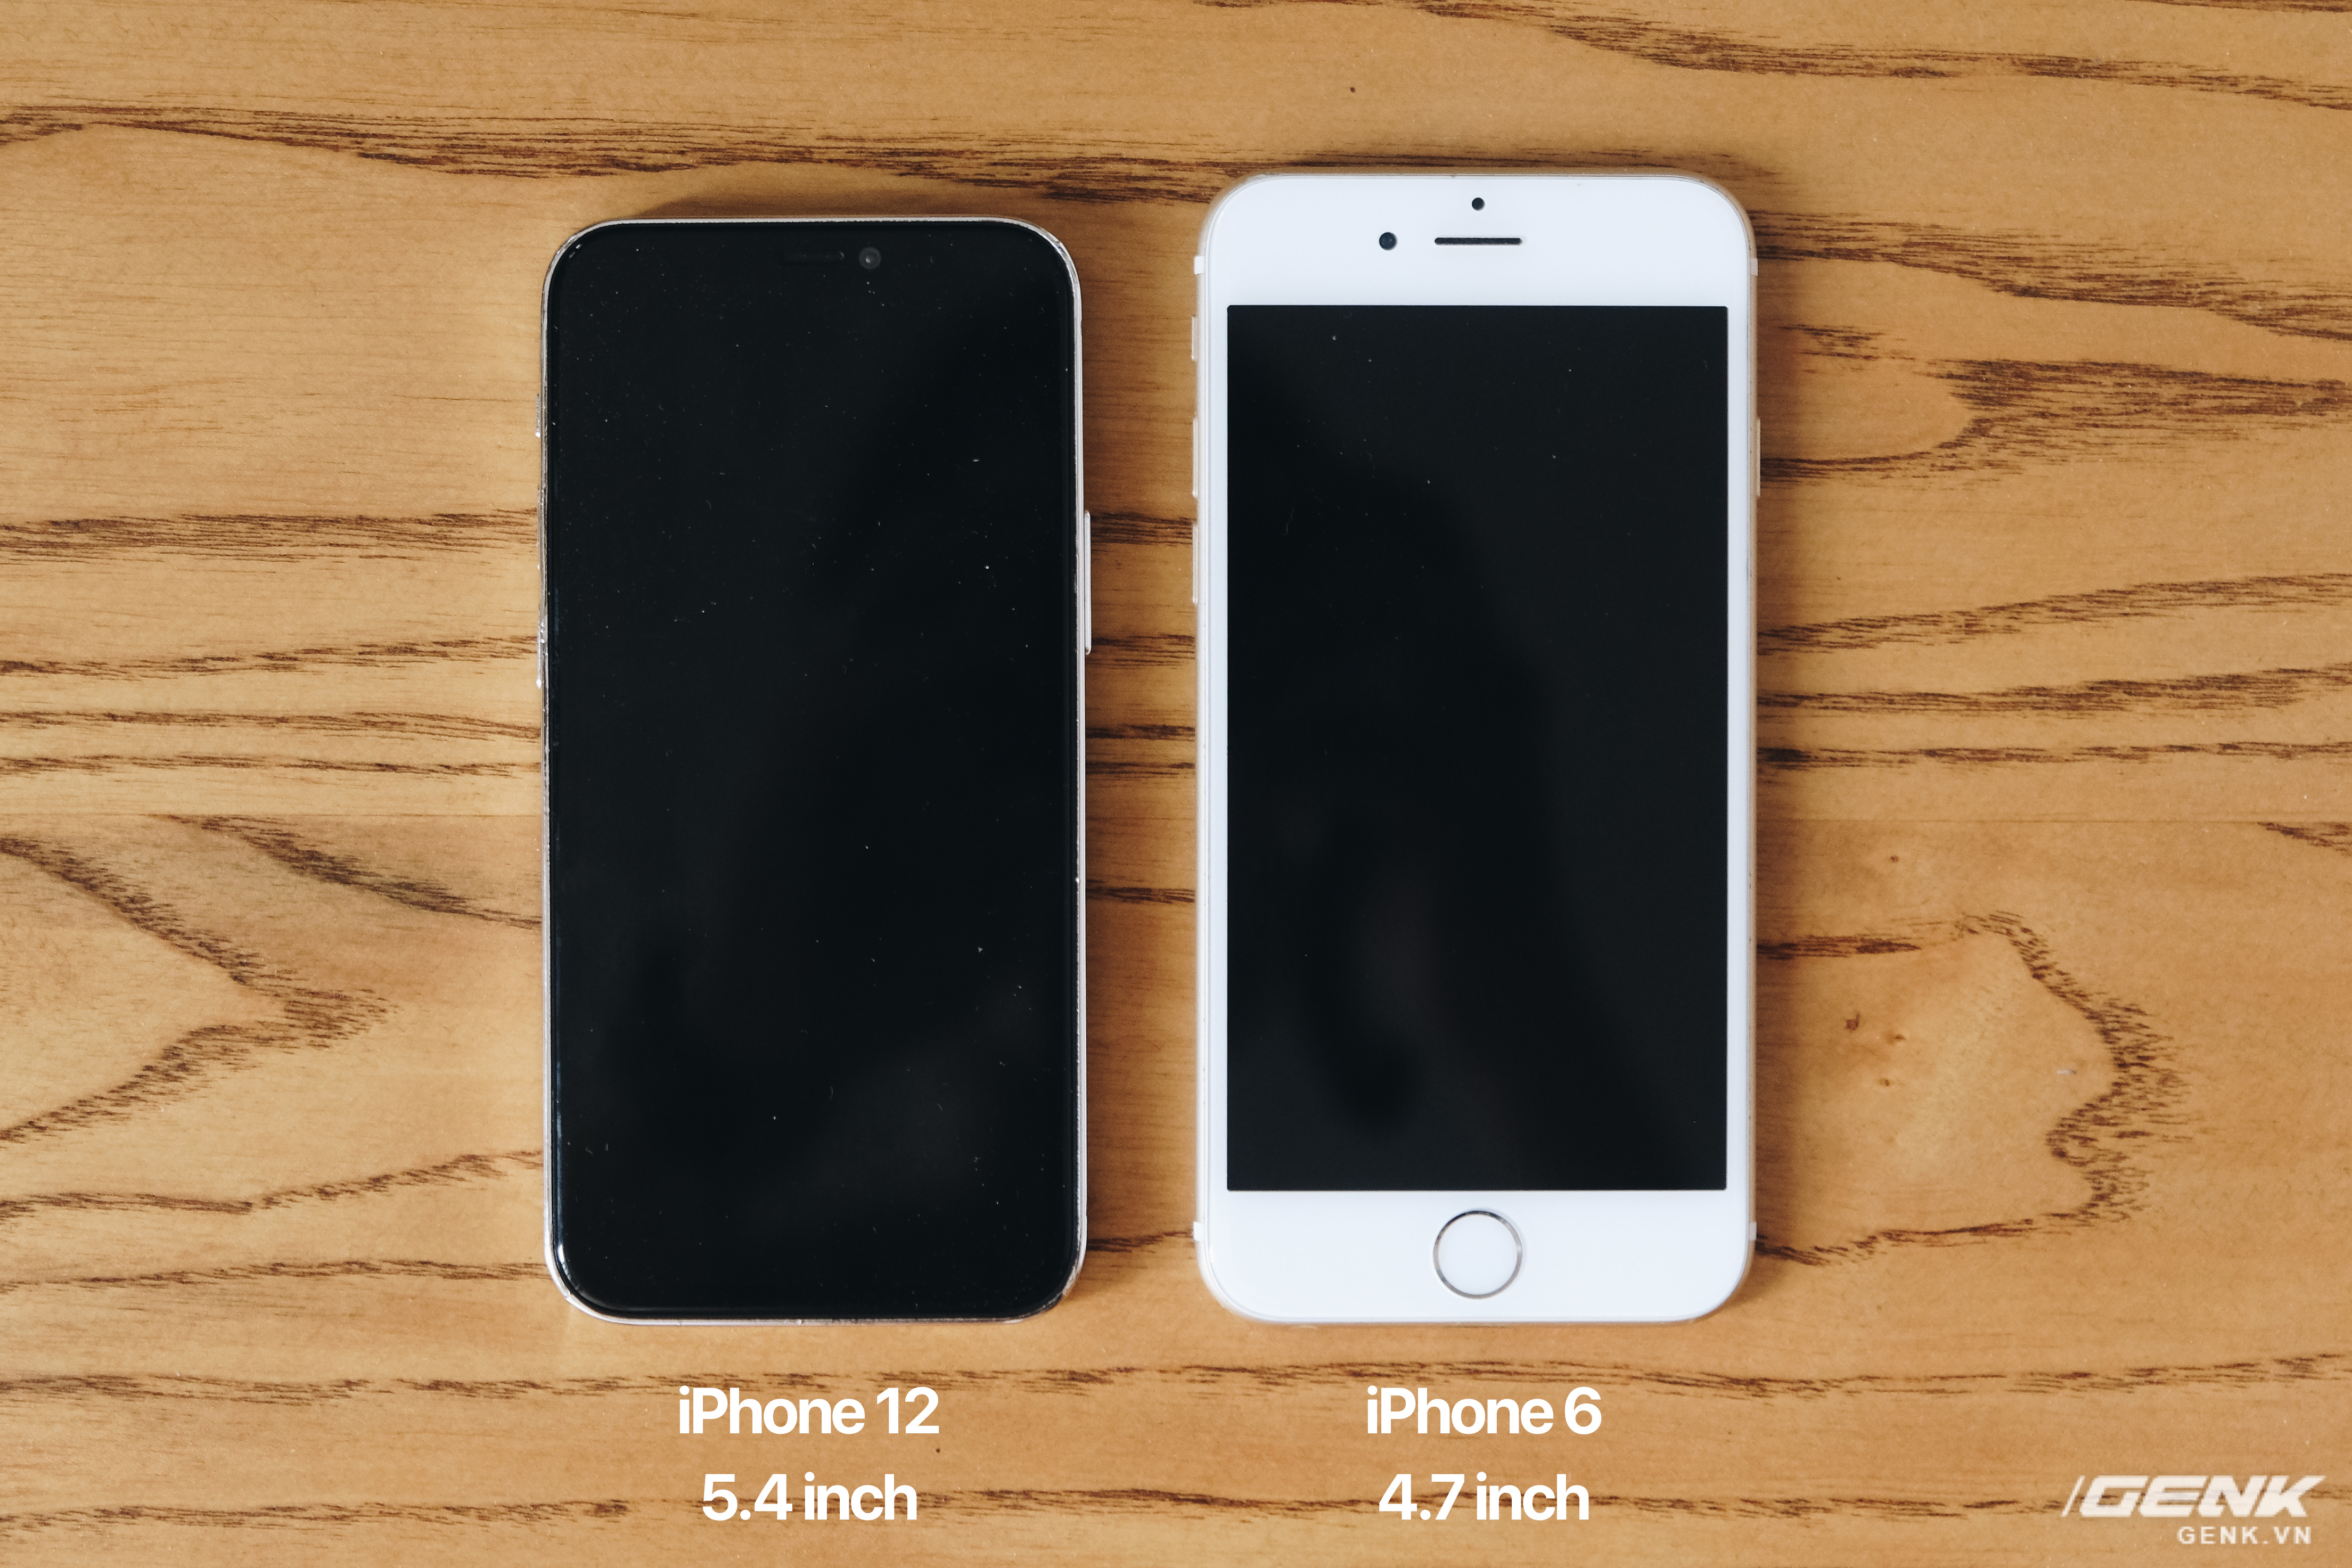 Hãy cùng ngắm nhìn loạt ảnh đầy ấn tượng về iPhone 7 phiên bản màu đen. Không chỉ là sản phẩm điện thoại chất lượng, iPhone 7 còn có kiểu dáng đẹp mắt, thu hút mọi ánh nhìn. Hãy xem ảnh để cảm nhận sự hoàn hảo và sang trọng của iPhone